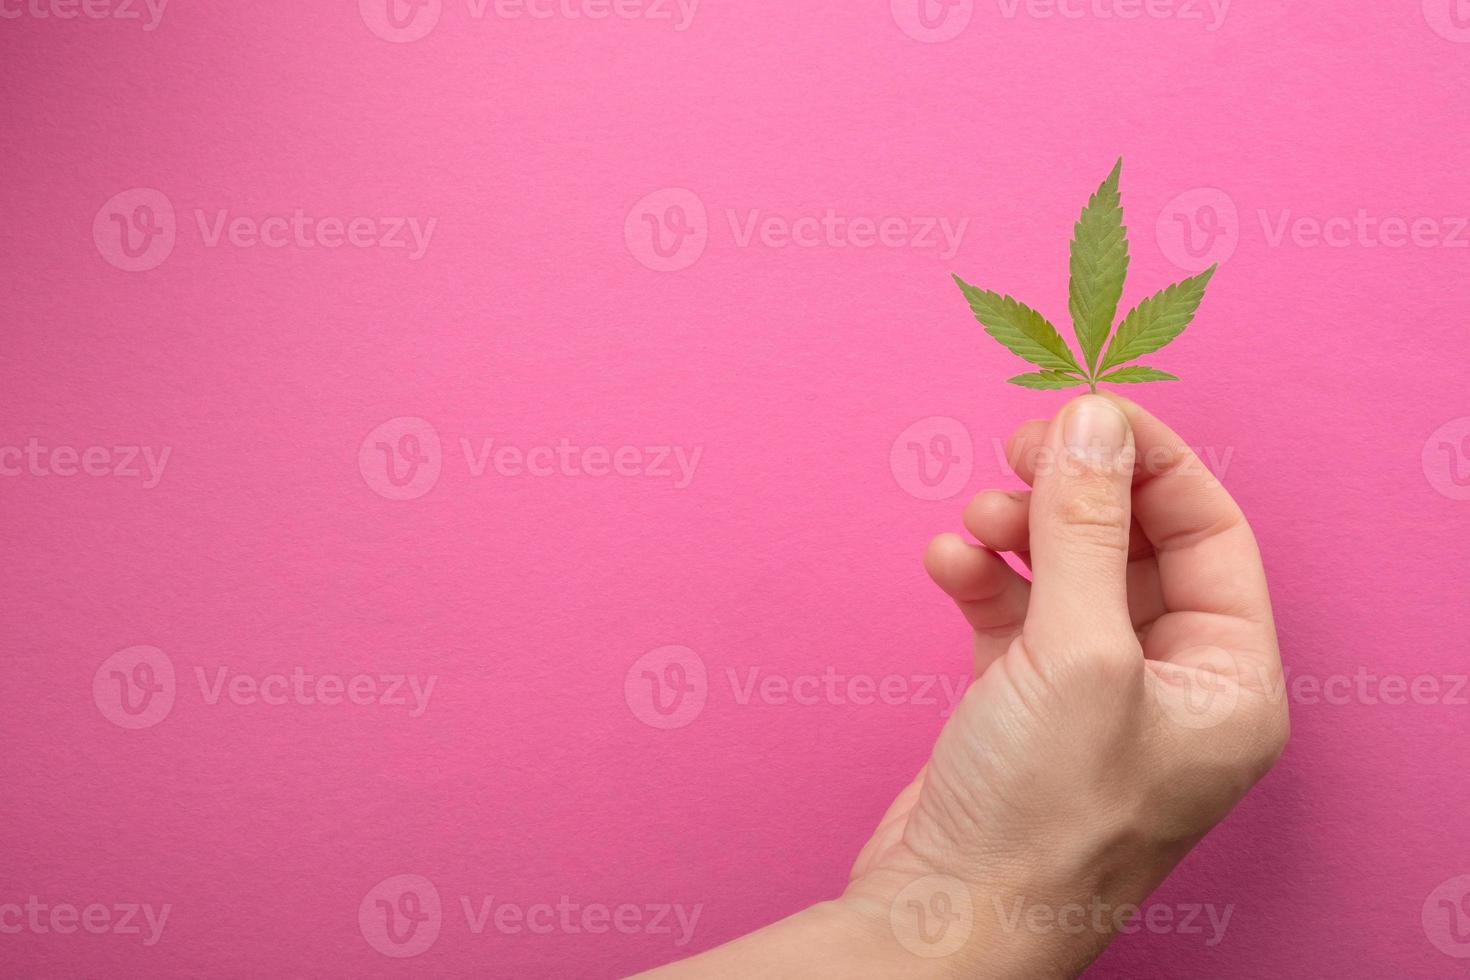 Mano femenina sosteniendo la hoja de cannabis en el espacio de copia de fondo rosa, cuidado de la piel de marihuana foto